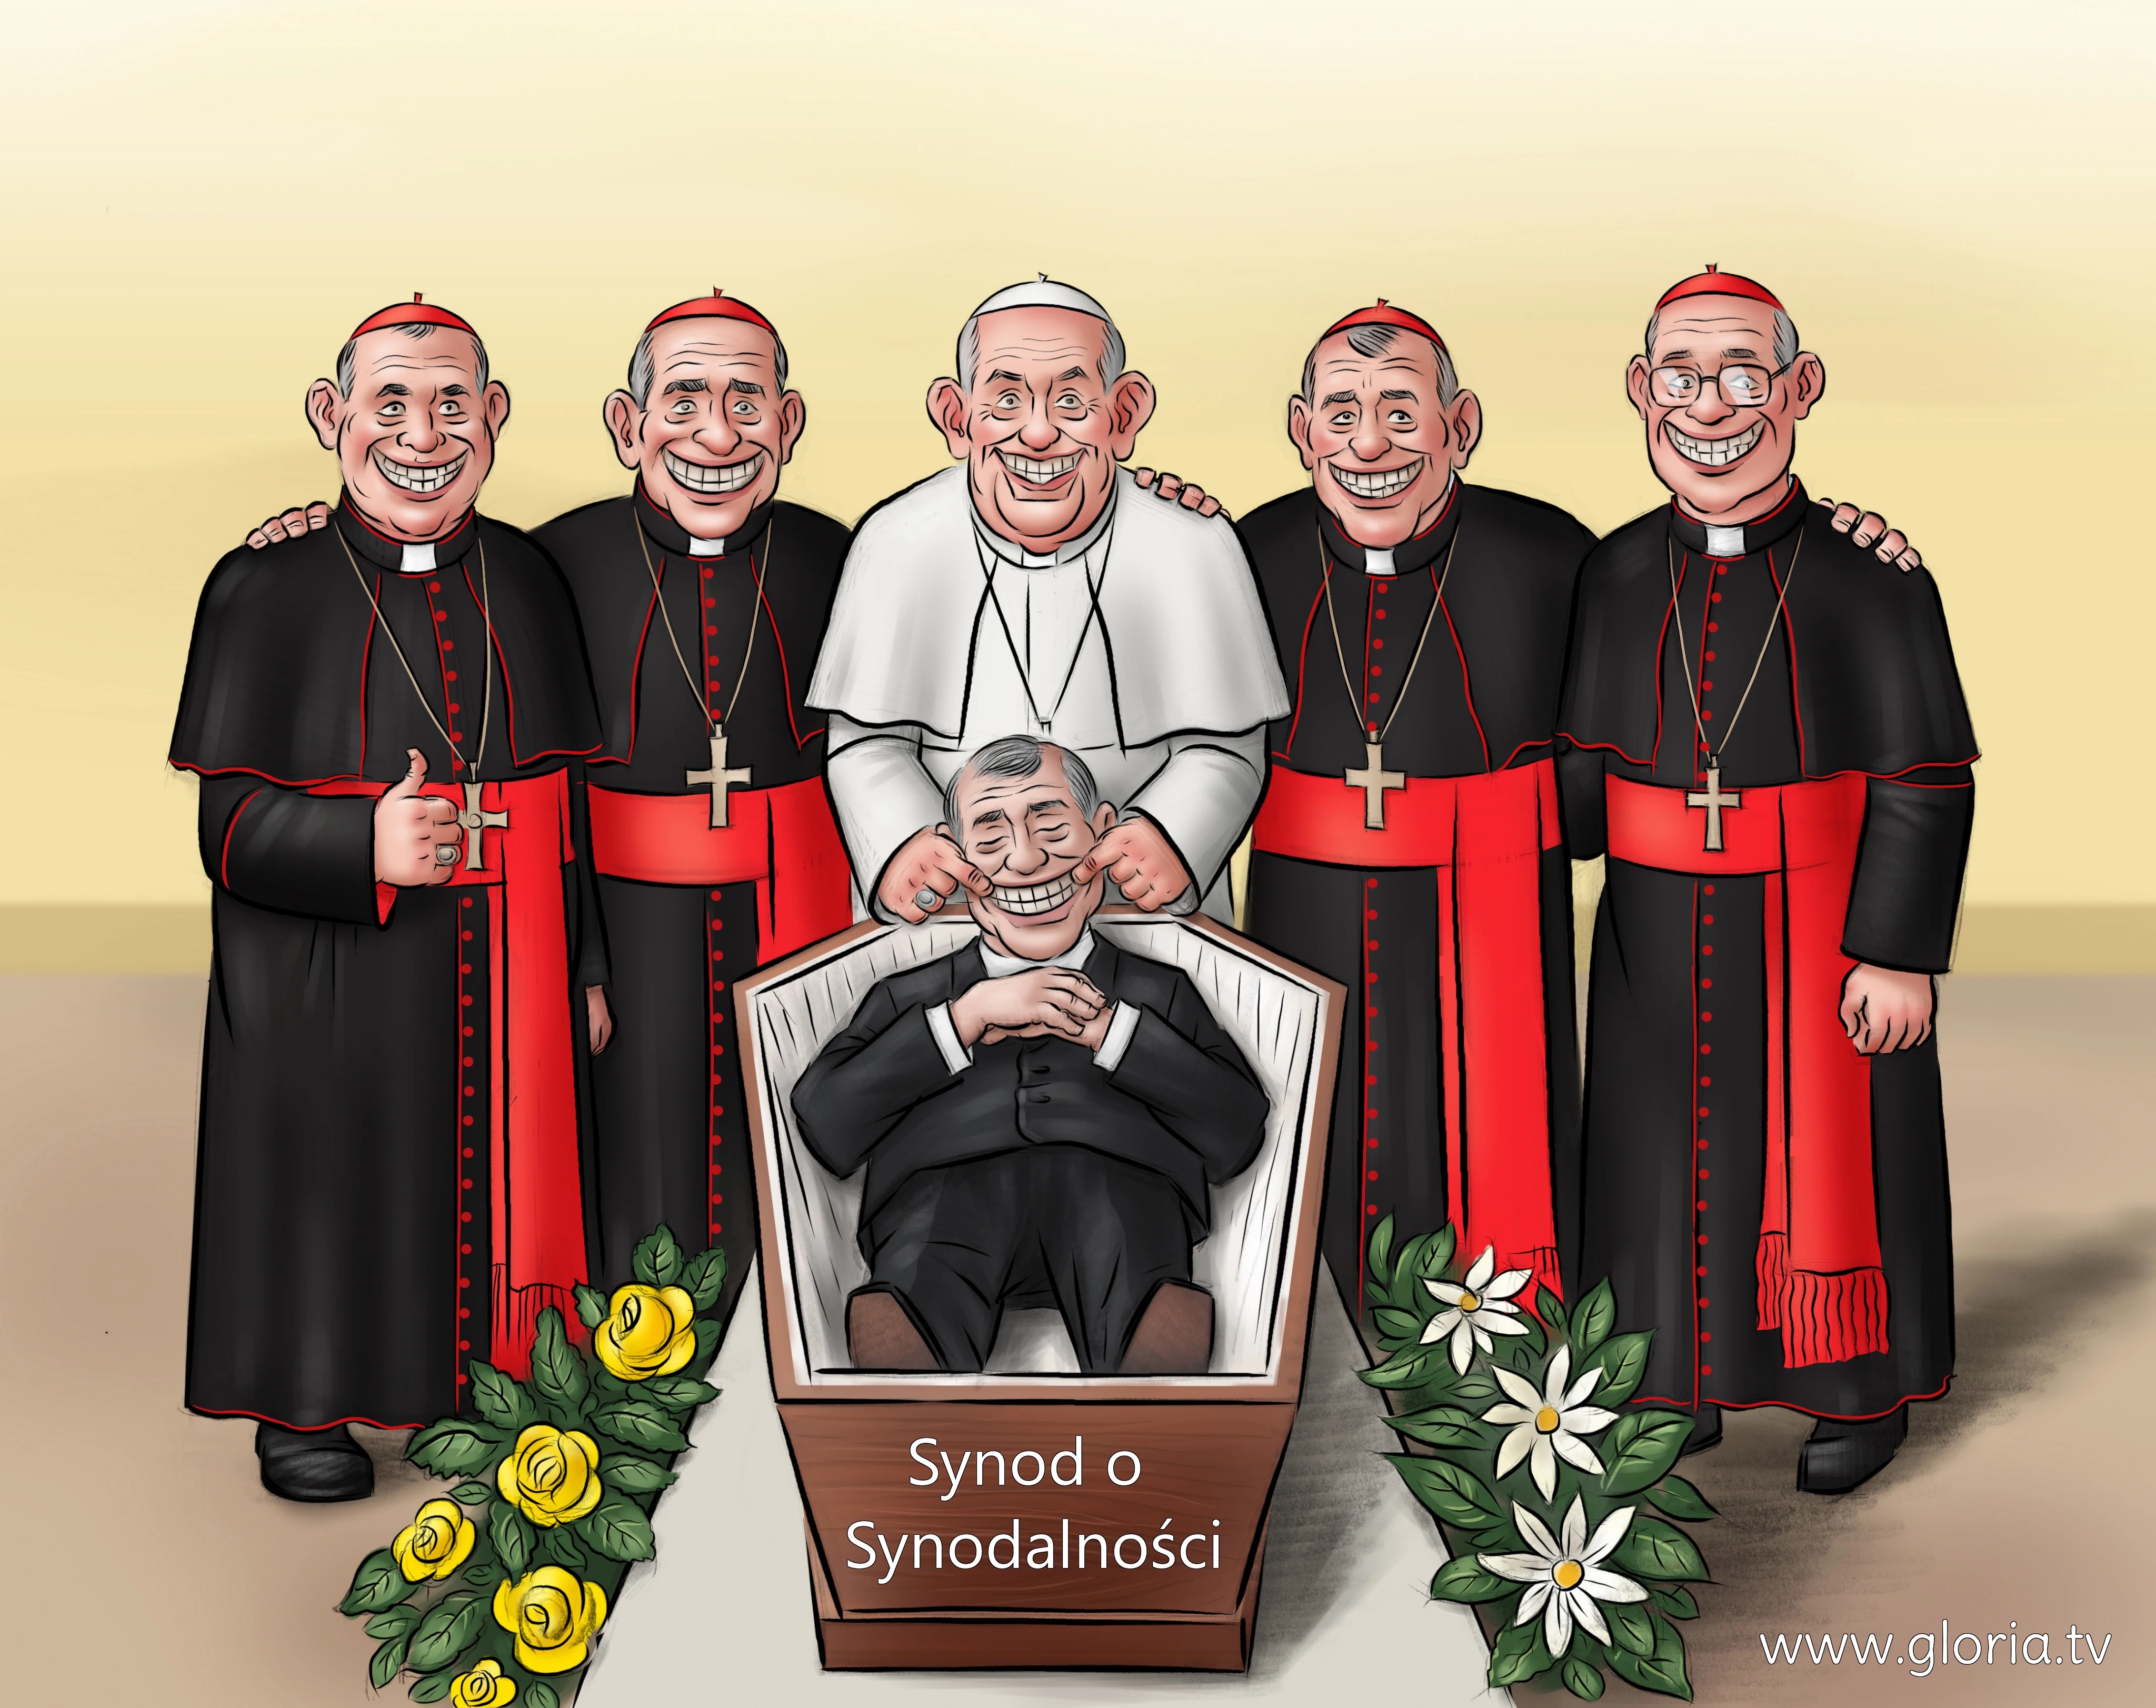 Pseudopapież Franciszek-Bergoglio i synod o synodalności